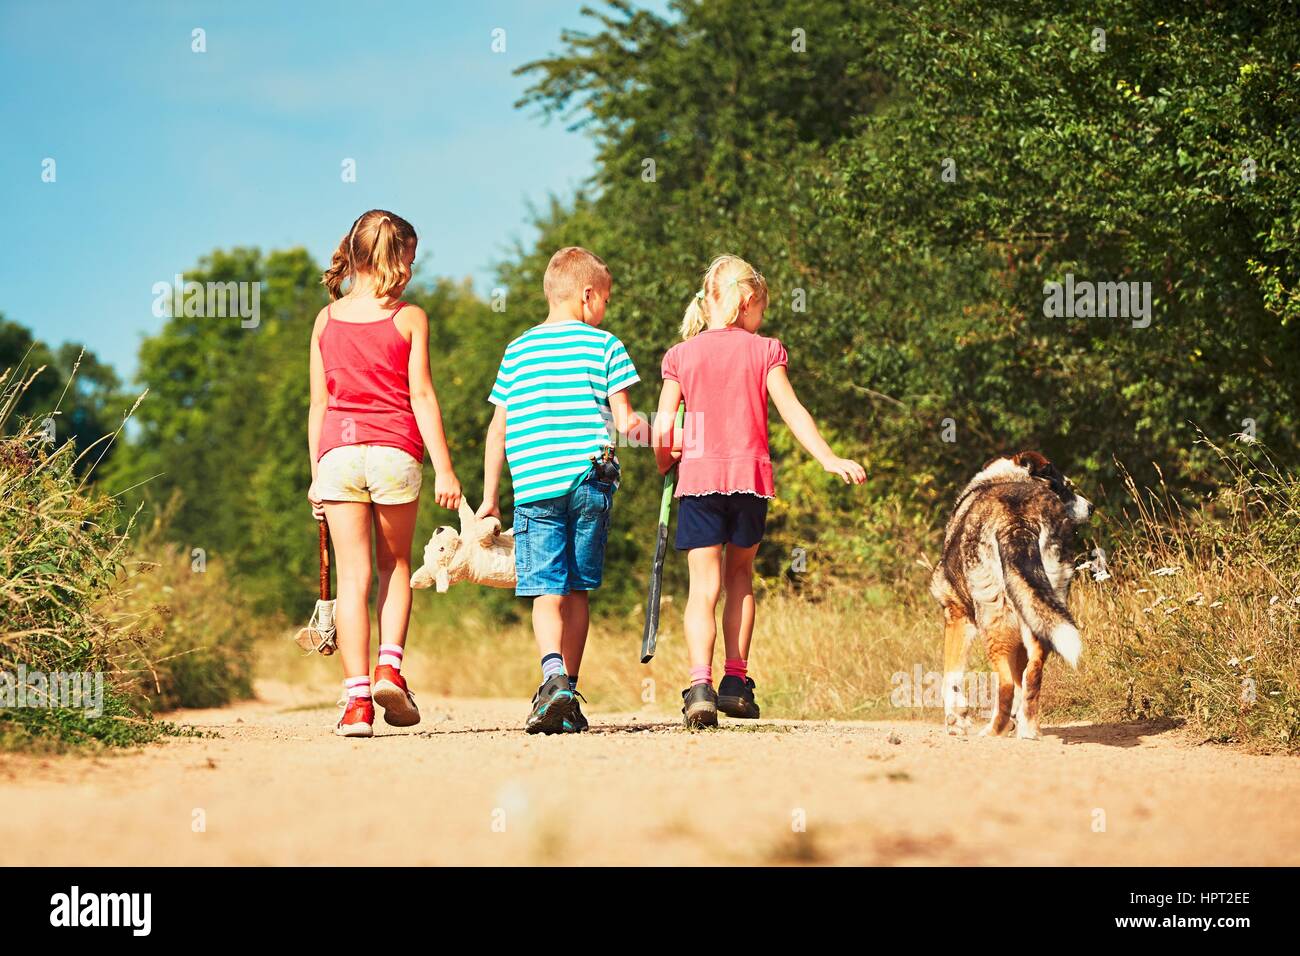 Fratelli con un cane in natura. Due ragazze e un ragazzo holding giocattoli e andando a giocare. Foto Stock